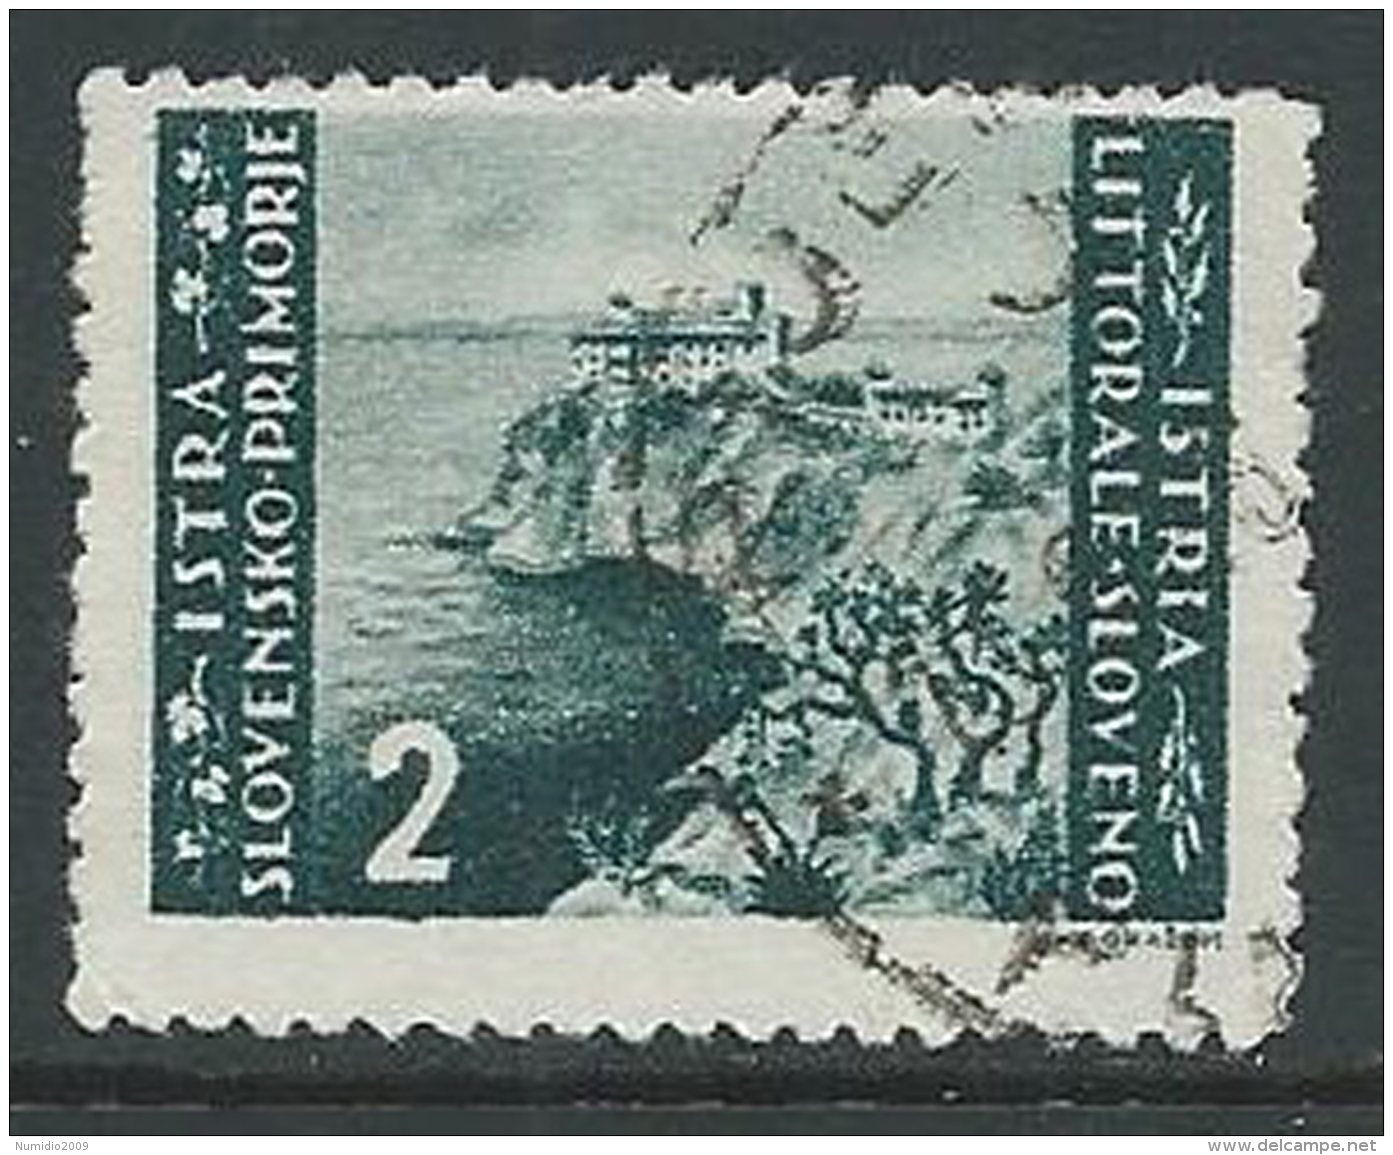 1946 OCC JUGOSLAVA ISTRIA USATO EMISSIONE BILINGUE 2 LIRE - M56-7 - Occ. Yougoslave: Istria